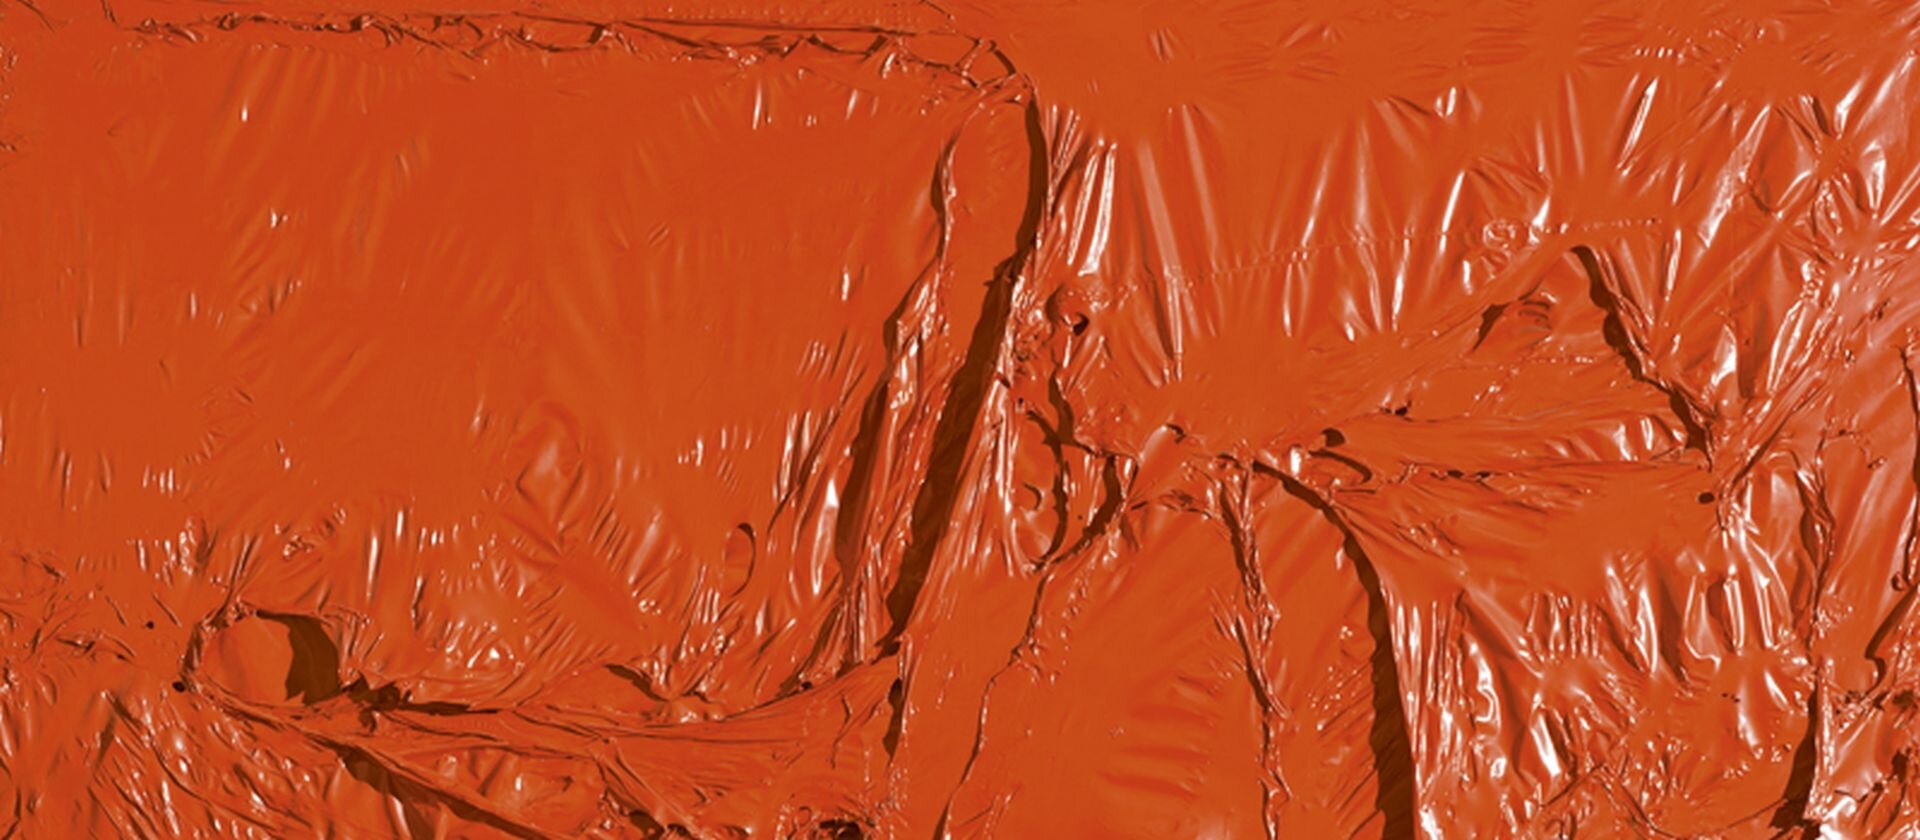 Ilustracja o kształcie poziomego prostokąta przedstawia obraz Alberto Burriego „Trauma malarstwa, Czerwony plastik”. Obraz ukazuje pomarańczową powierzchnię o silnej fakturze. Malarz zagospodarował całą powierzchnię płótna. Faktura jednak nie posiada zaplanowanego układu, jej różnorodna forma świadczy o przypadkowości.    